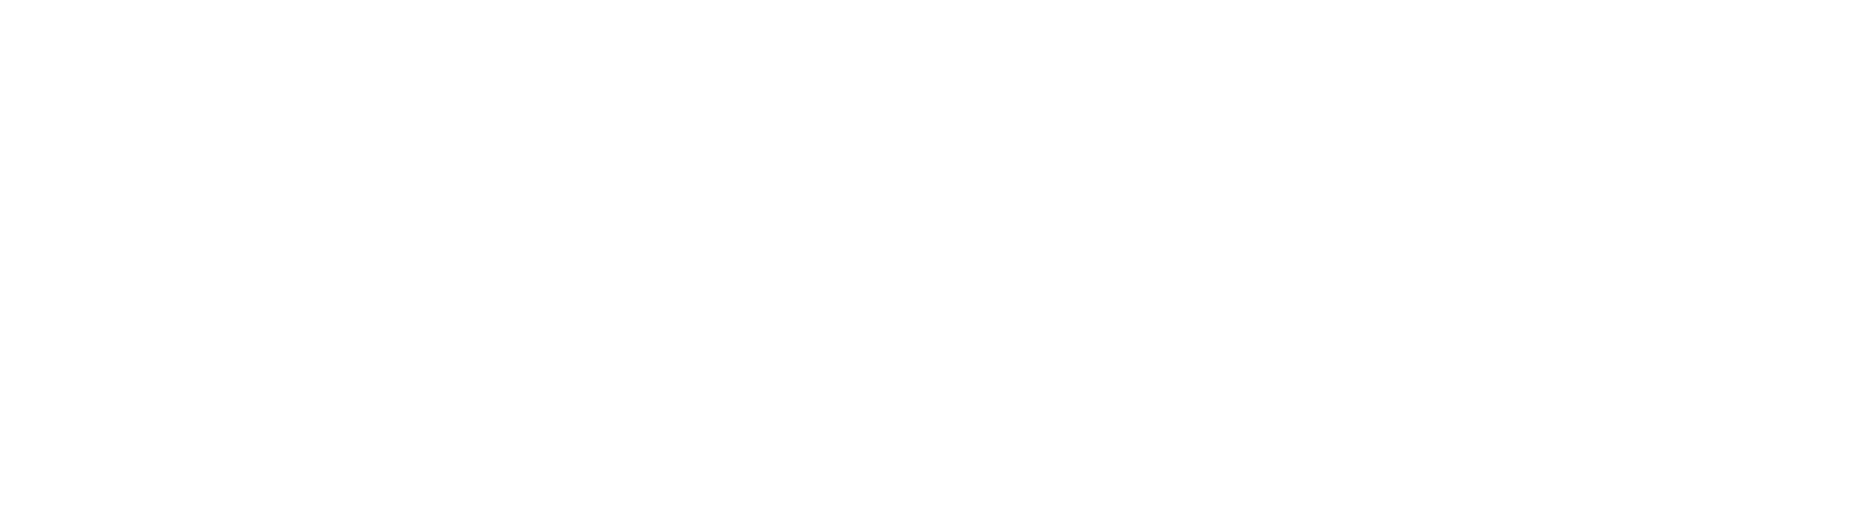 hksyu-logo-white